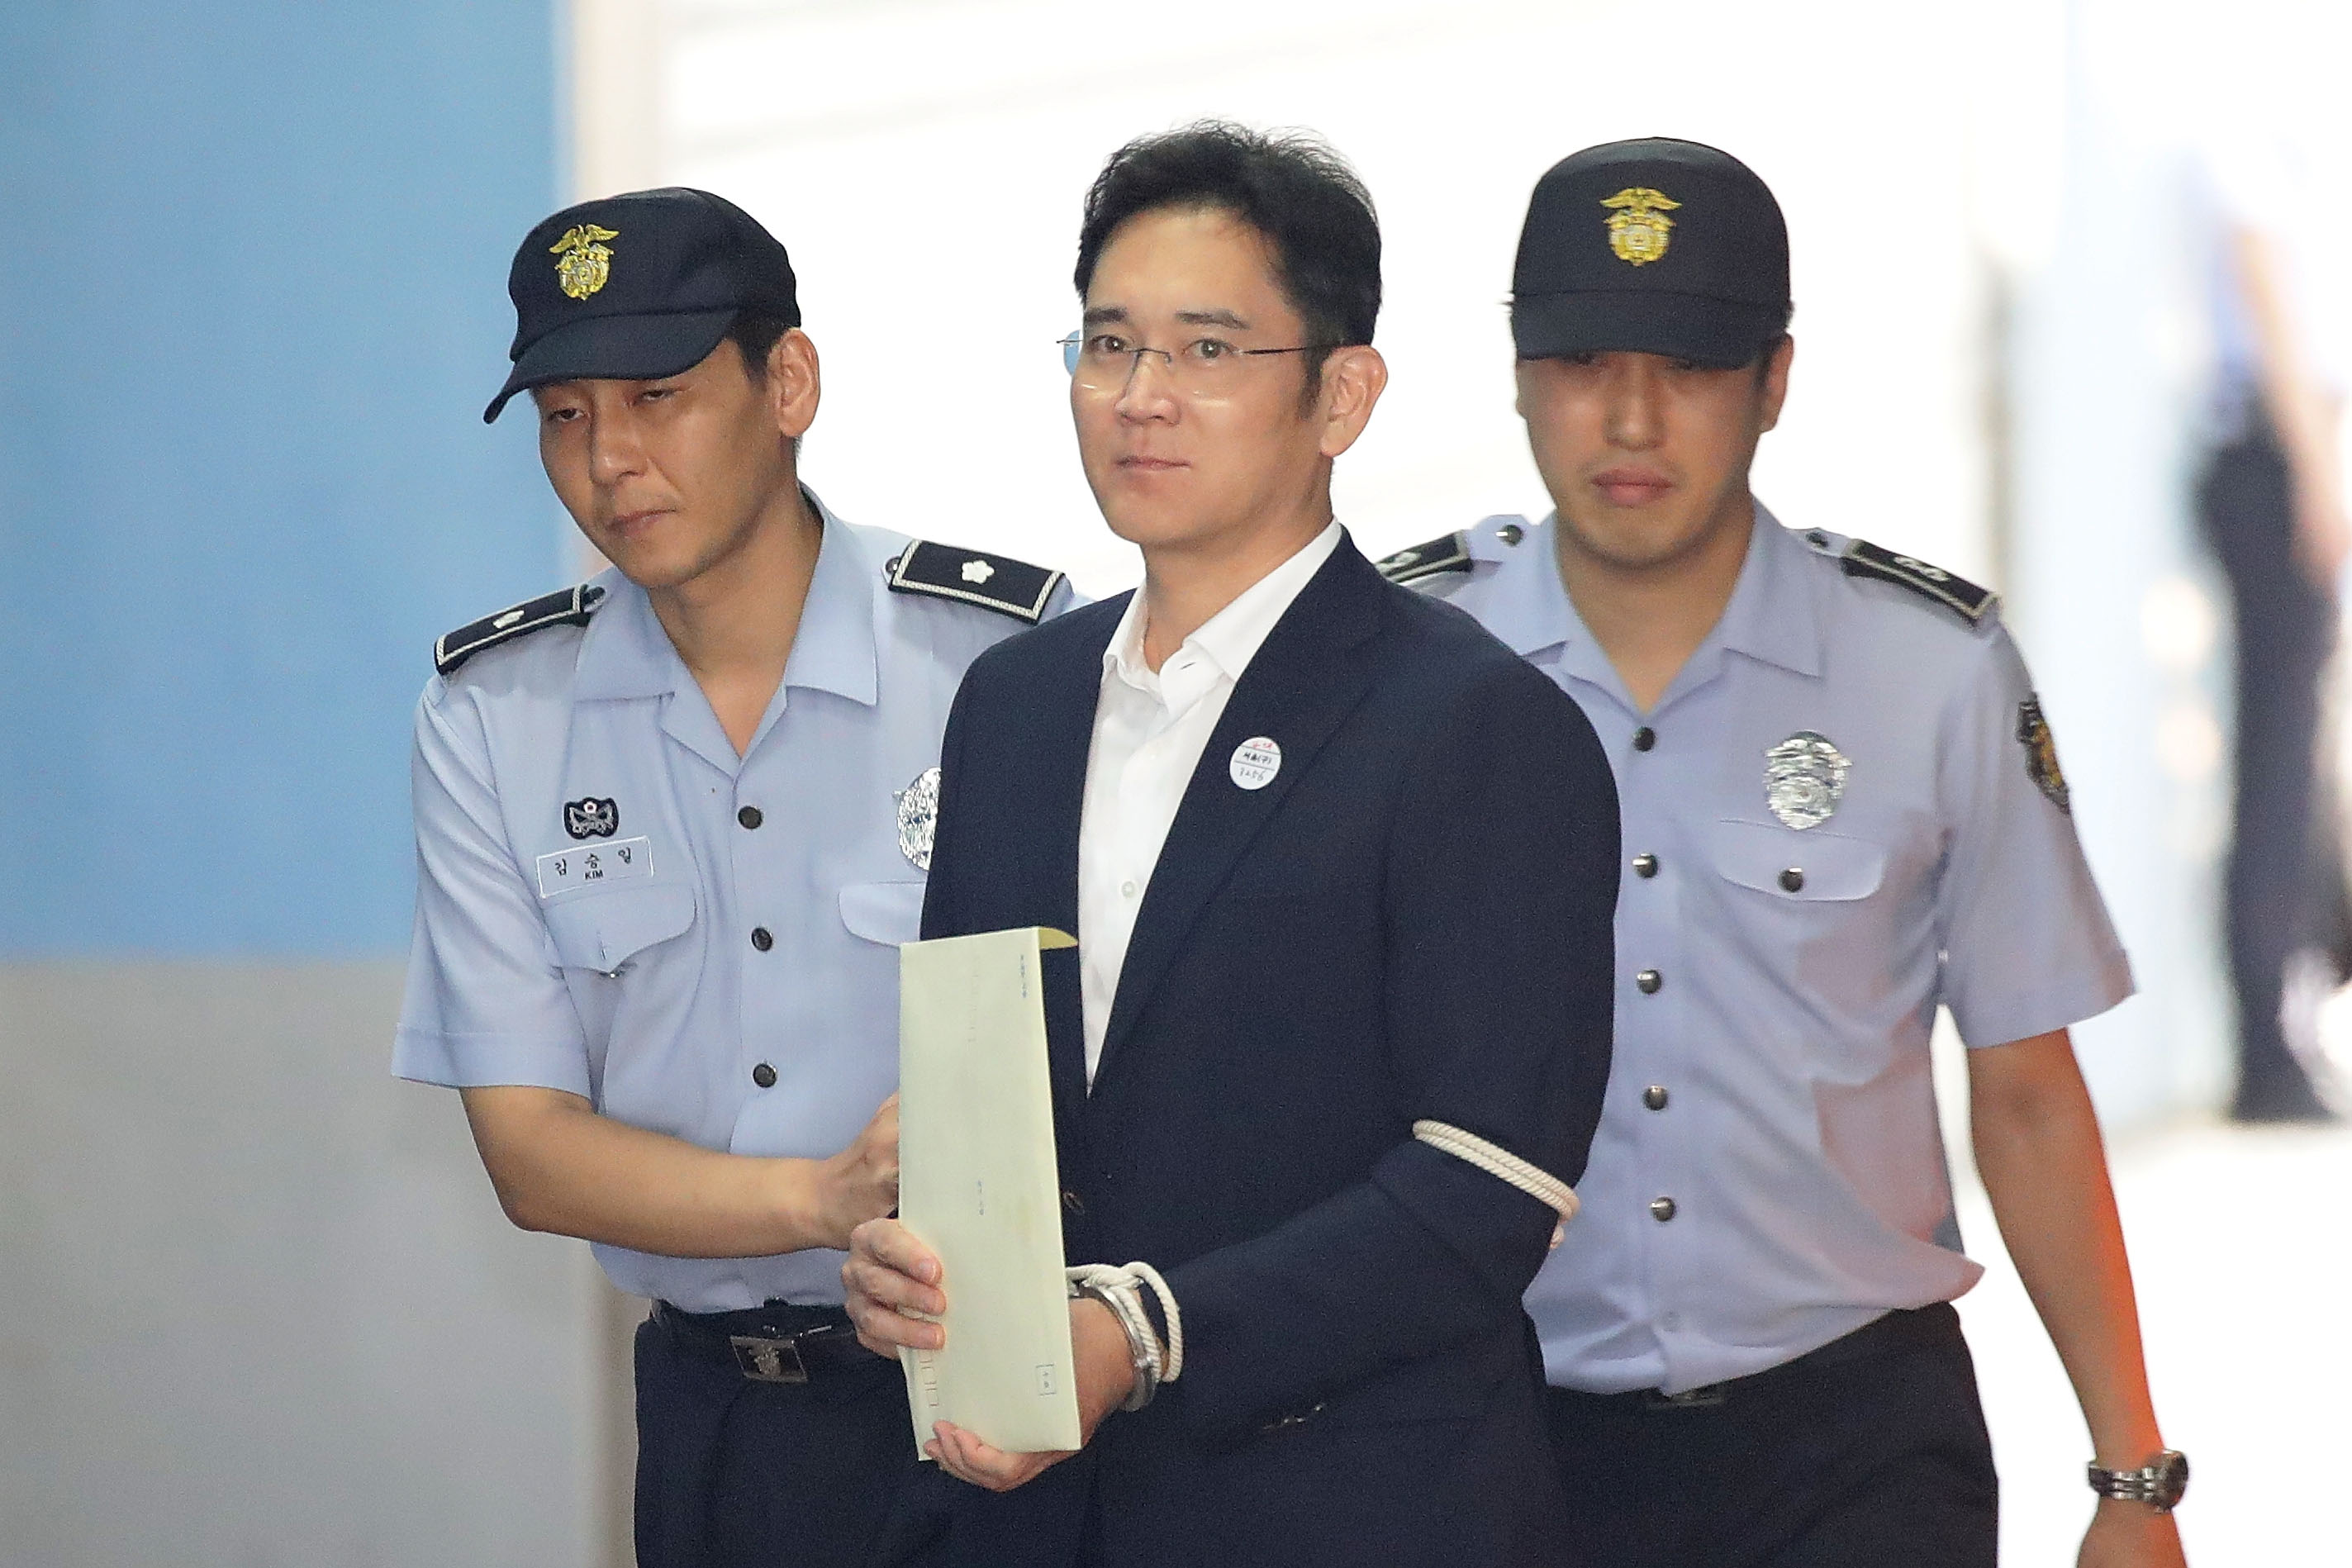 Осужденного за взяточничество главу Samsung выпустили на свободу, отсрочив исполнение приговора и сократив тюремный срок до двух с половиной лет